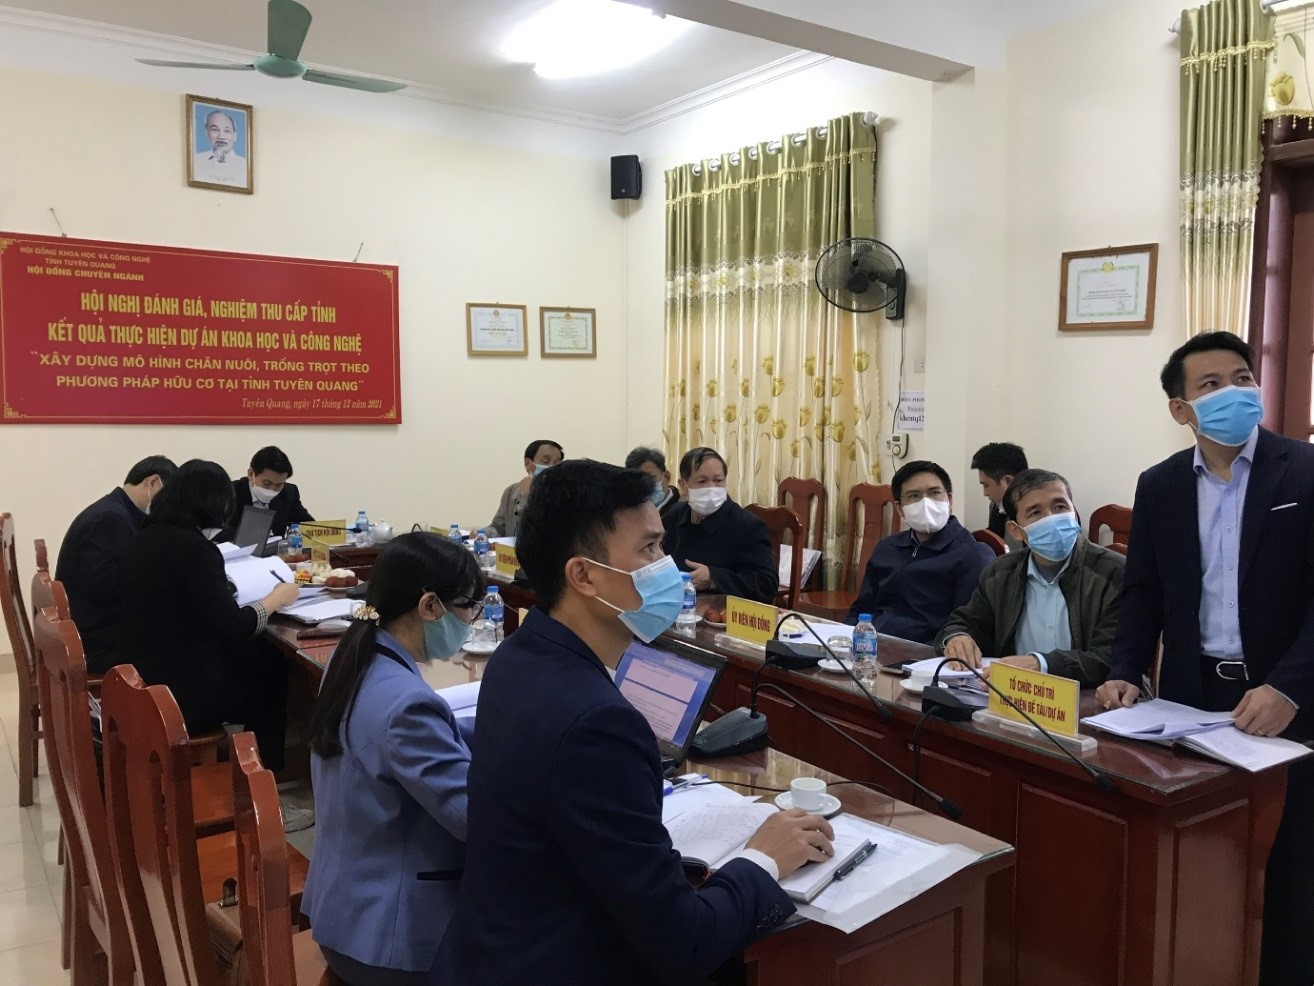 Đánh giá, nghiệm thu cấp tỉnh kết quả thực hiện Dự án “Xây dựng mô hình chăn nuôi, trồng trọt theo phương pháp hữu cơ tại tỉnh Tuyên Quang”